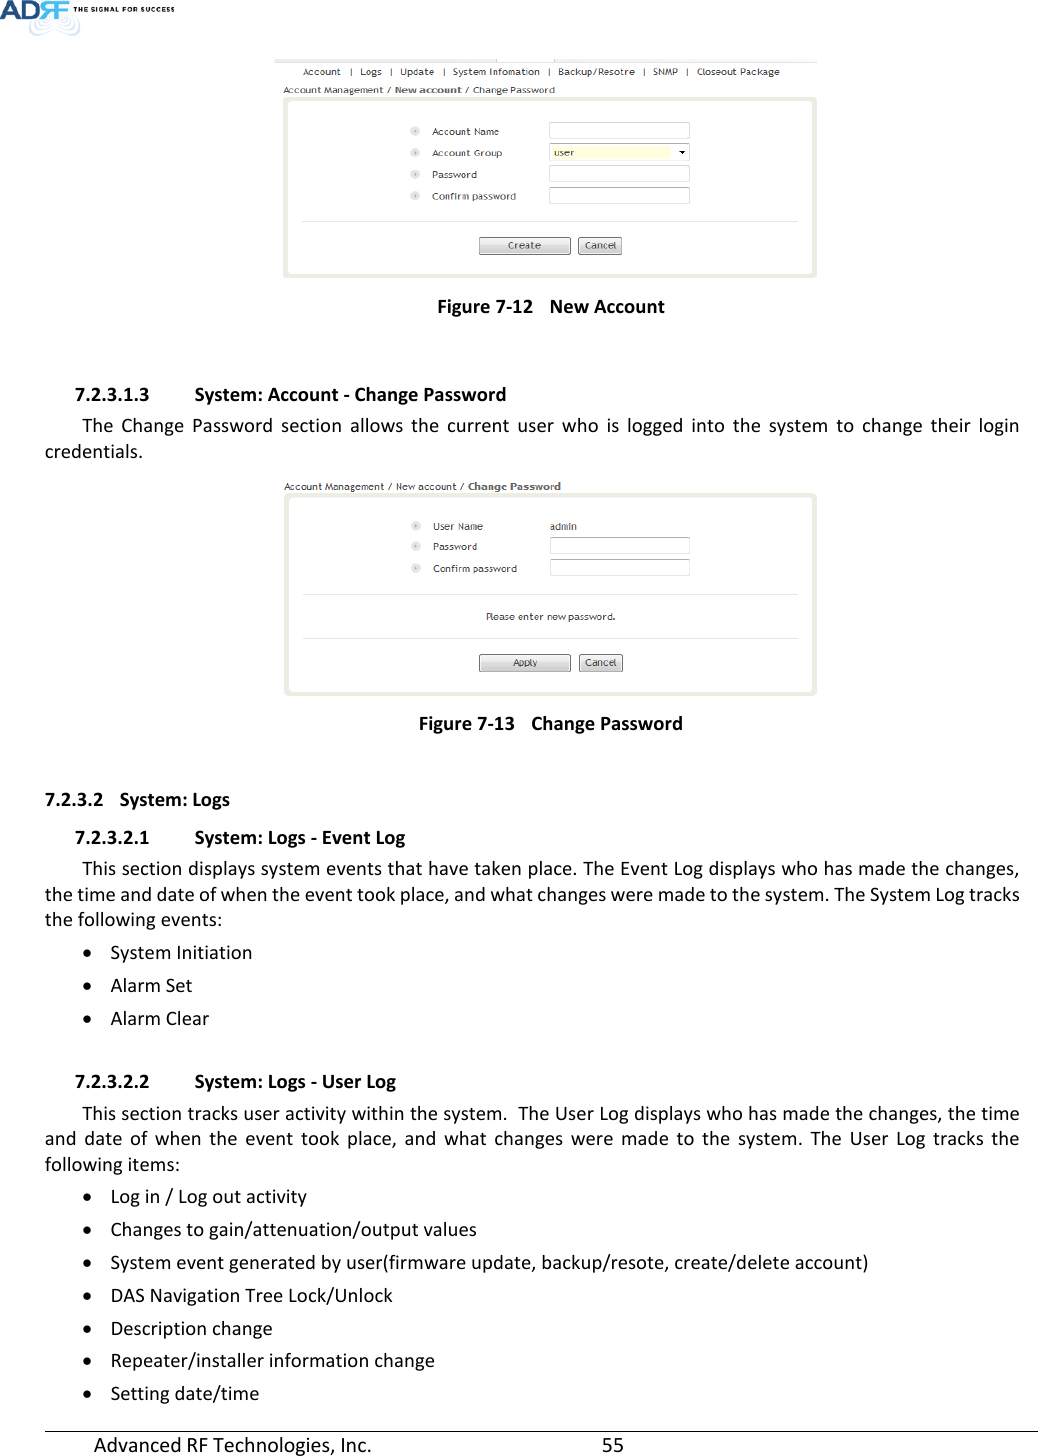 Page 55 of ADRF KOREA ADXV-R-25VUNA DAS (Distributed Antenna System) User Manual ADXV DAS